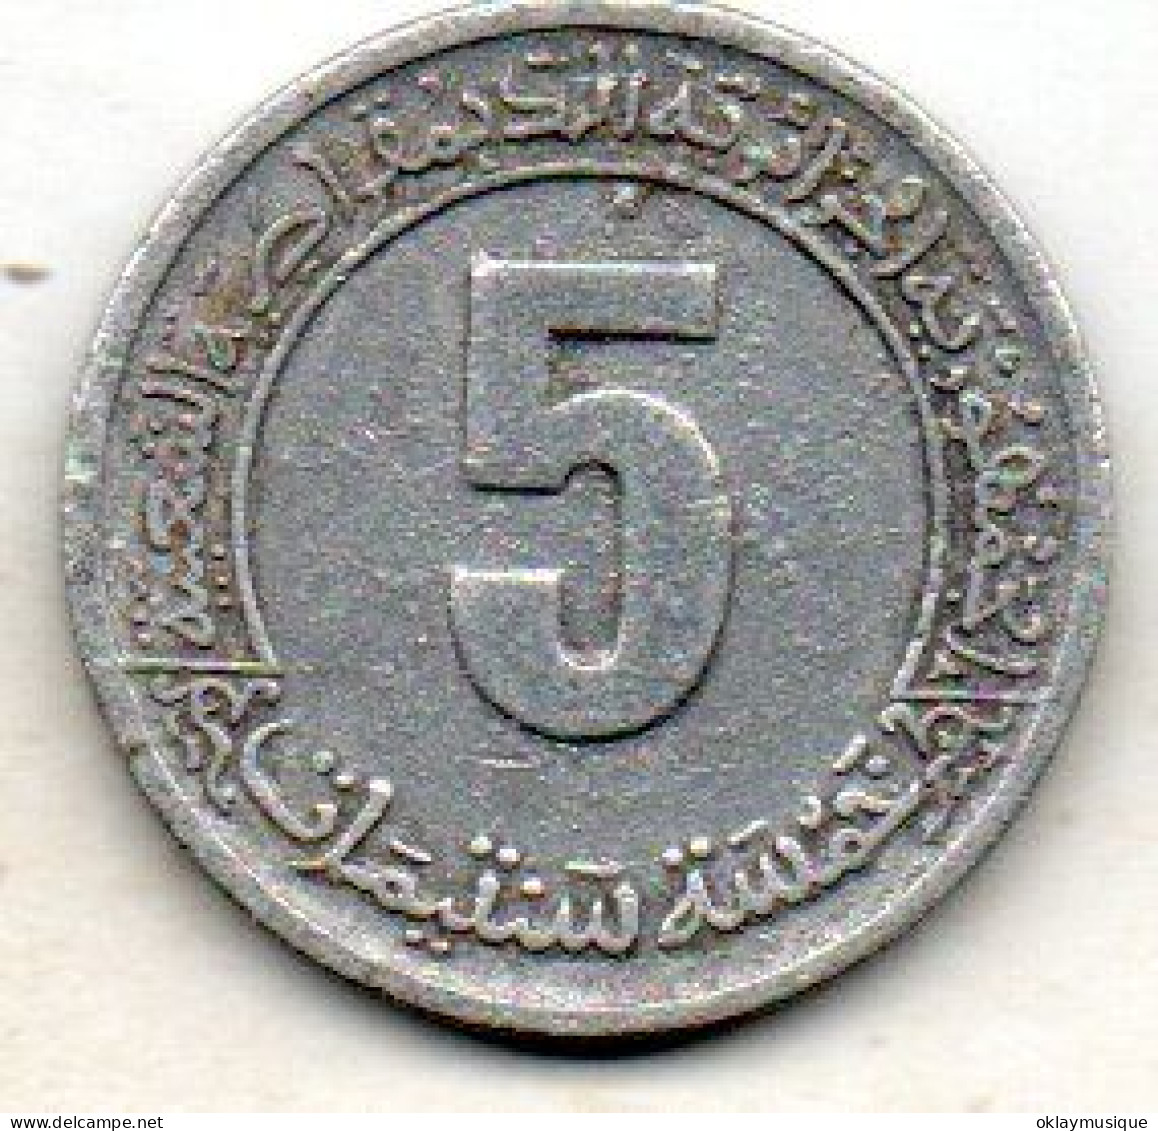 5 Centimes 1974 - Algeria